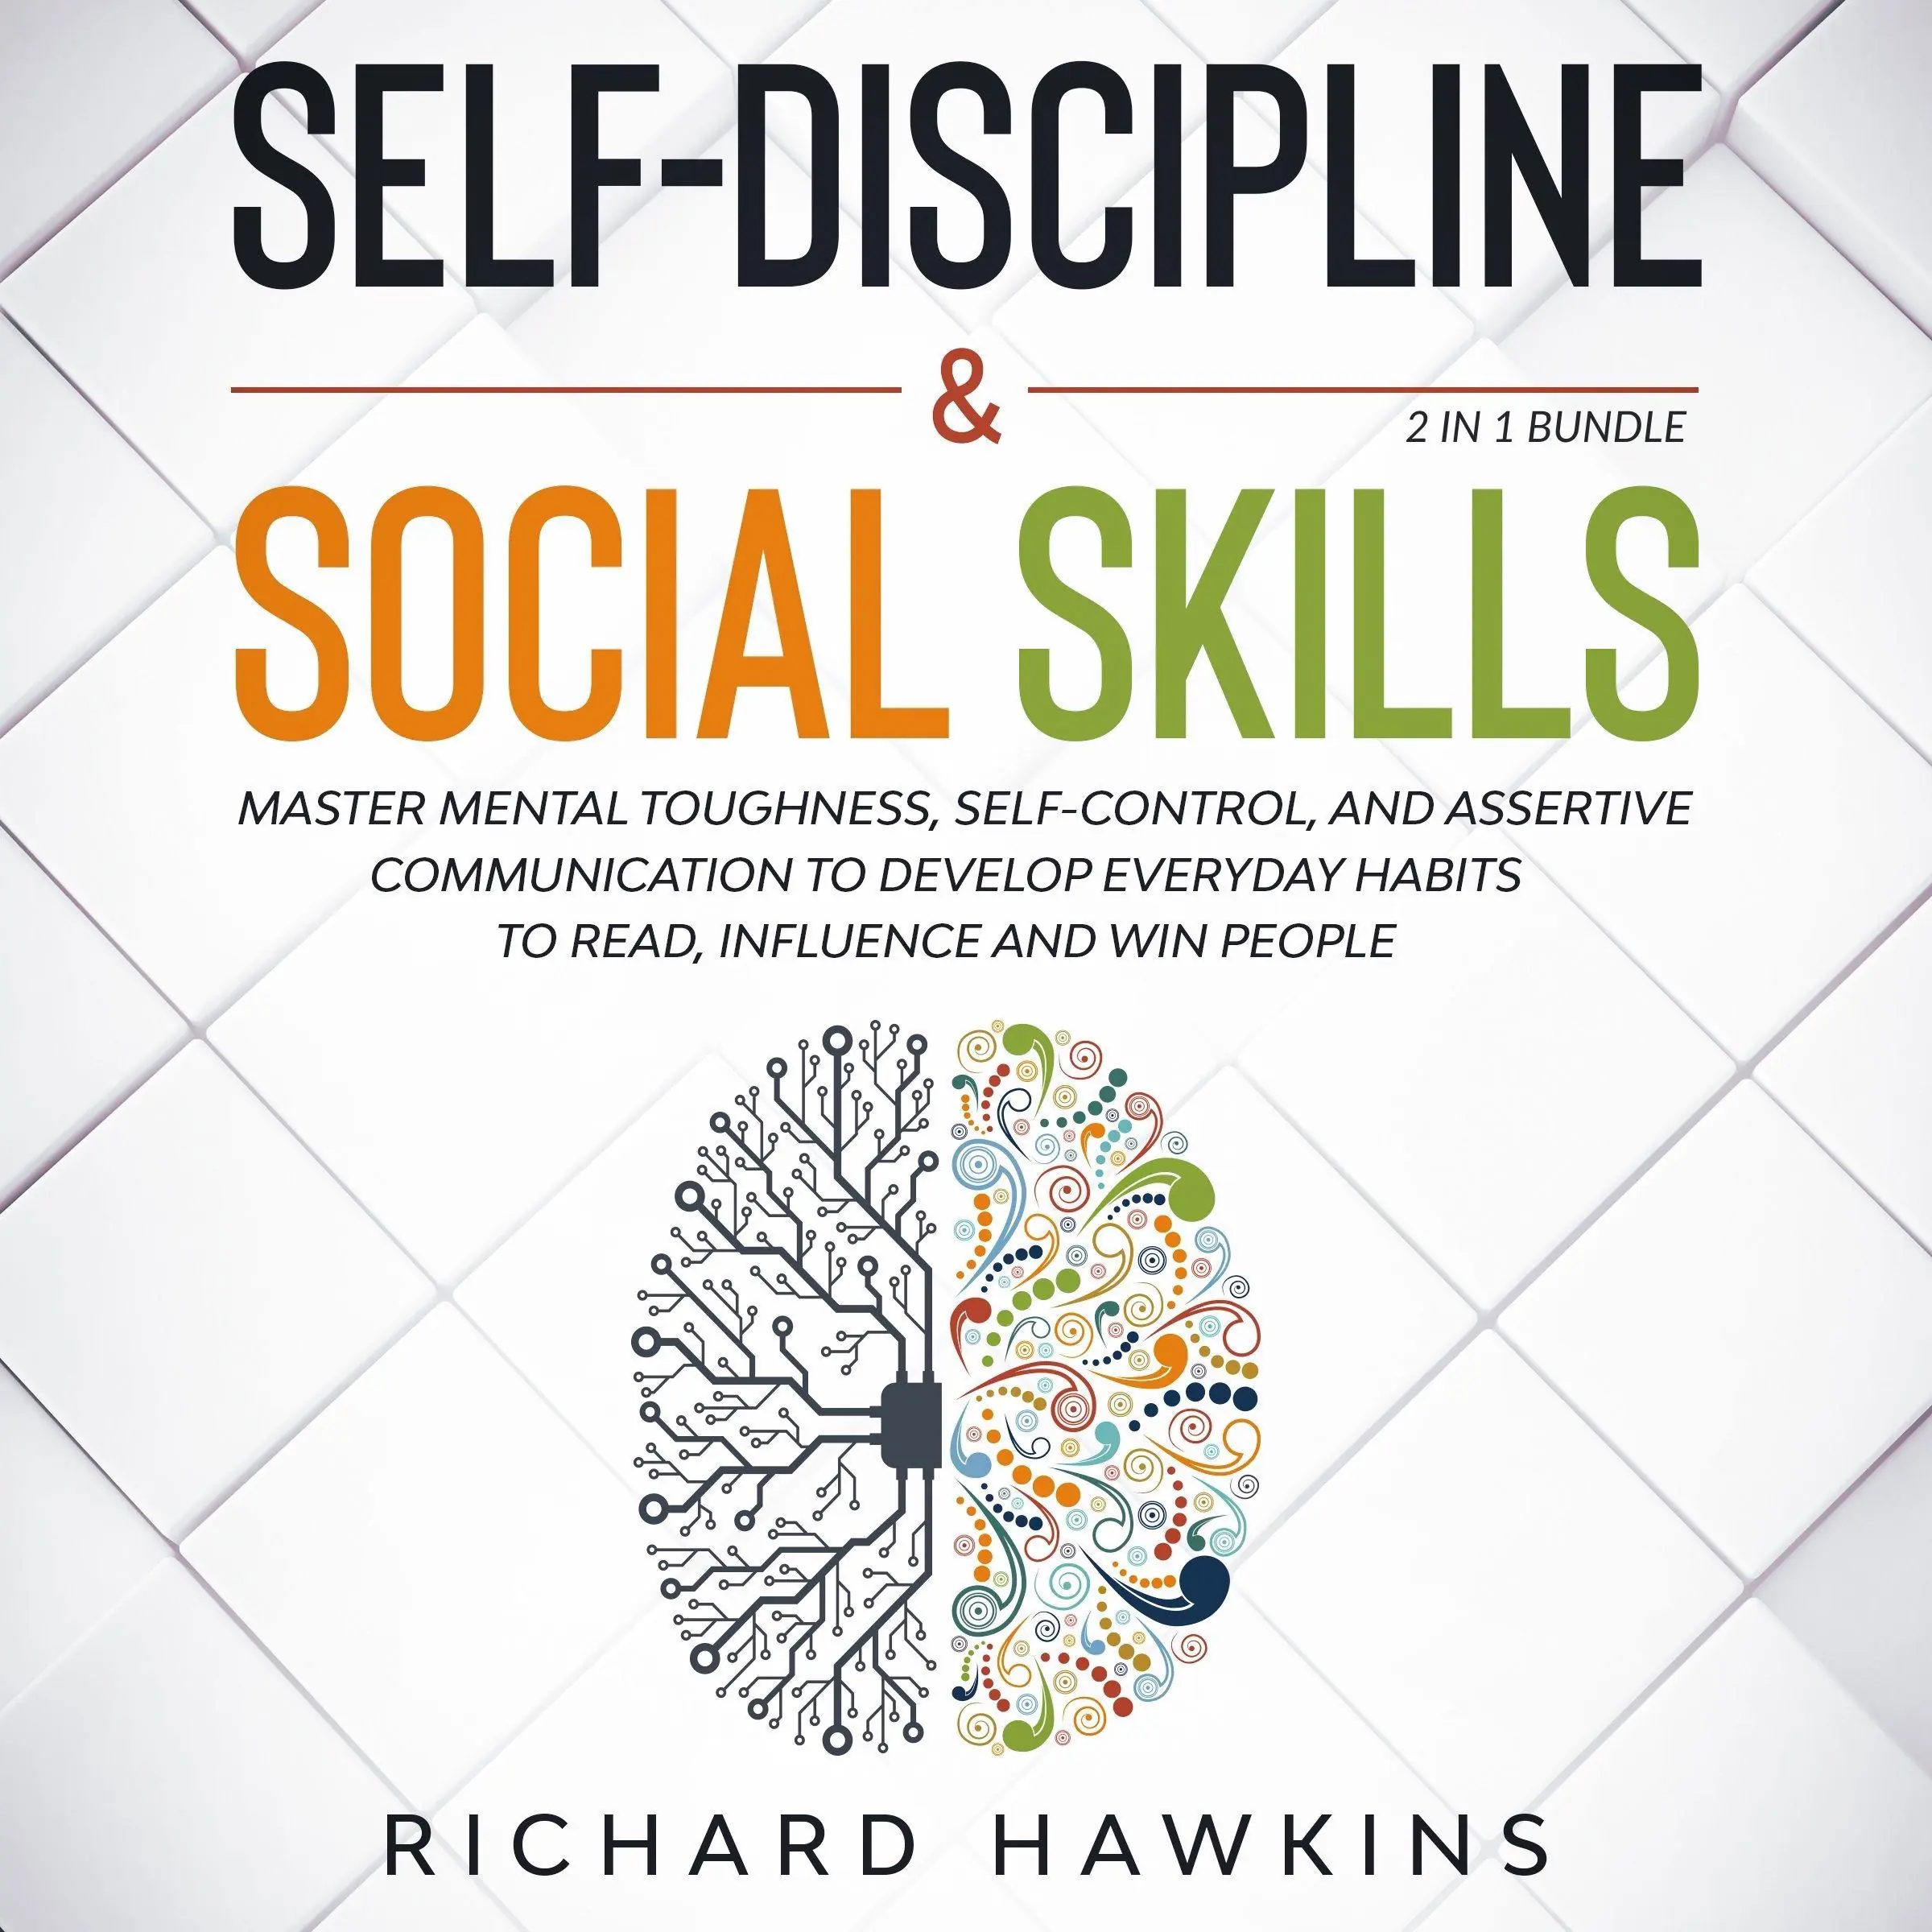 Self-Discipline & Social Skills - 2 in 1 Bundle Audiobook by Richard Hawkins